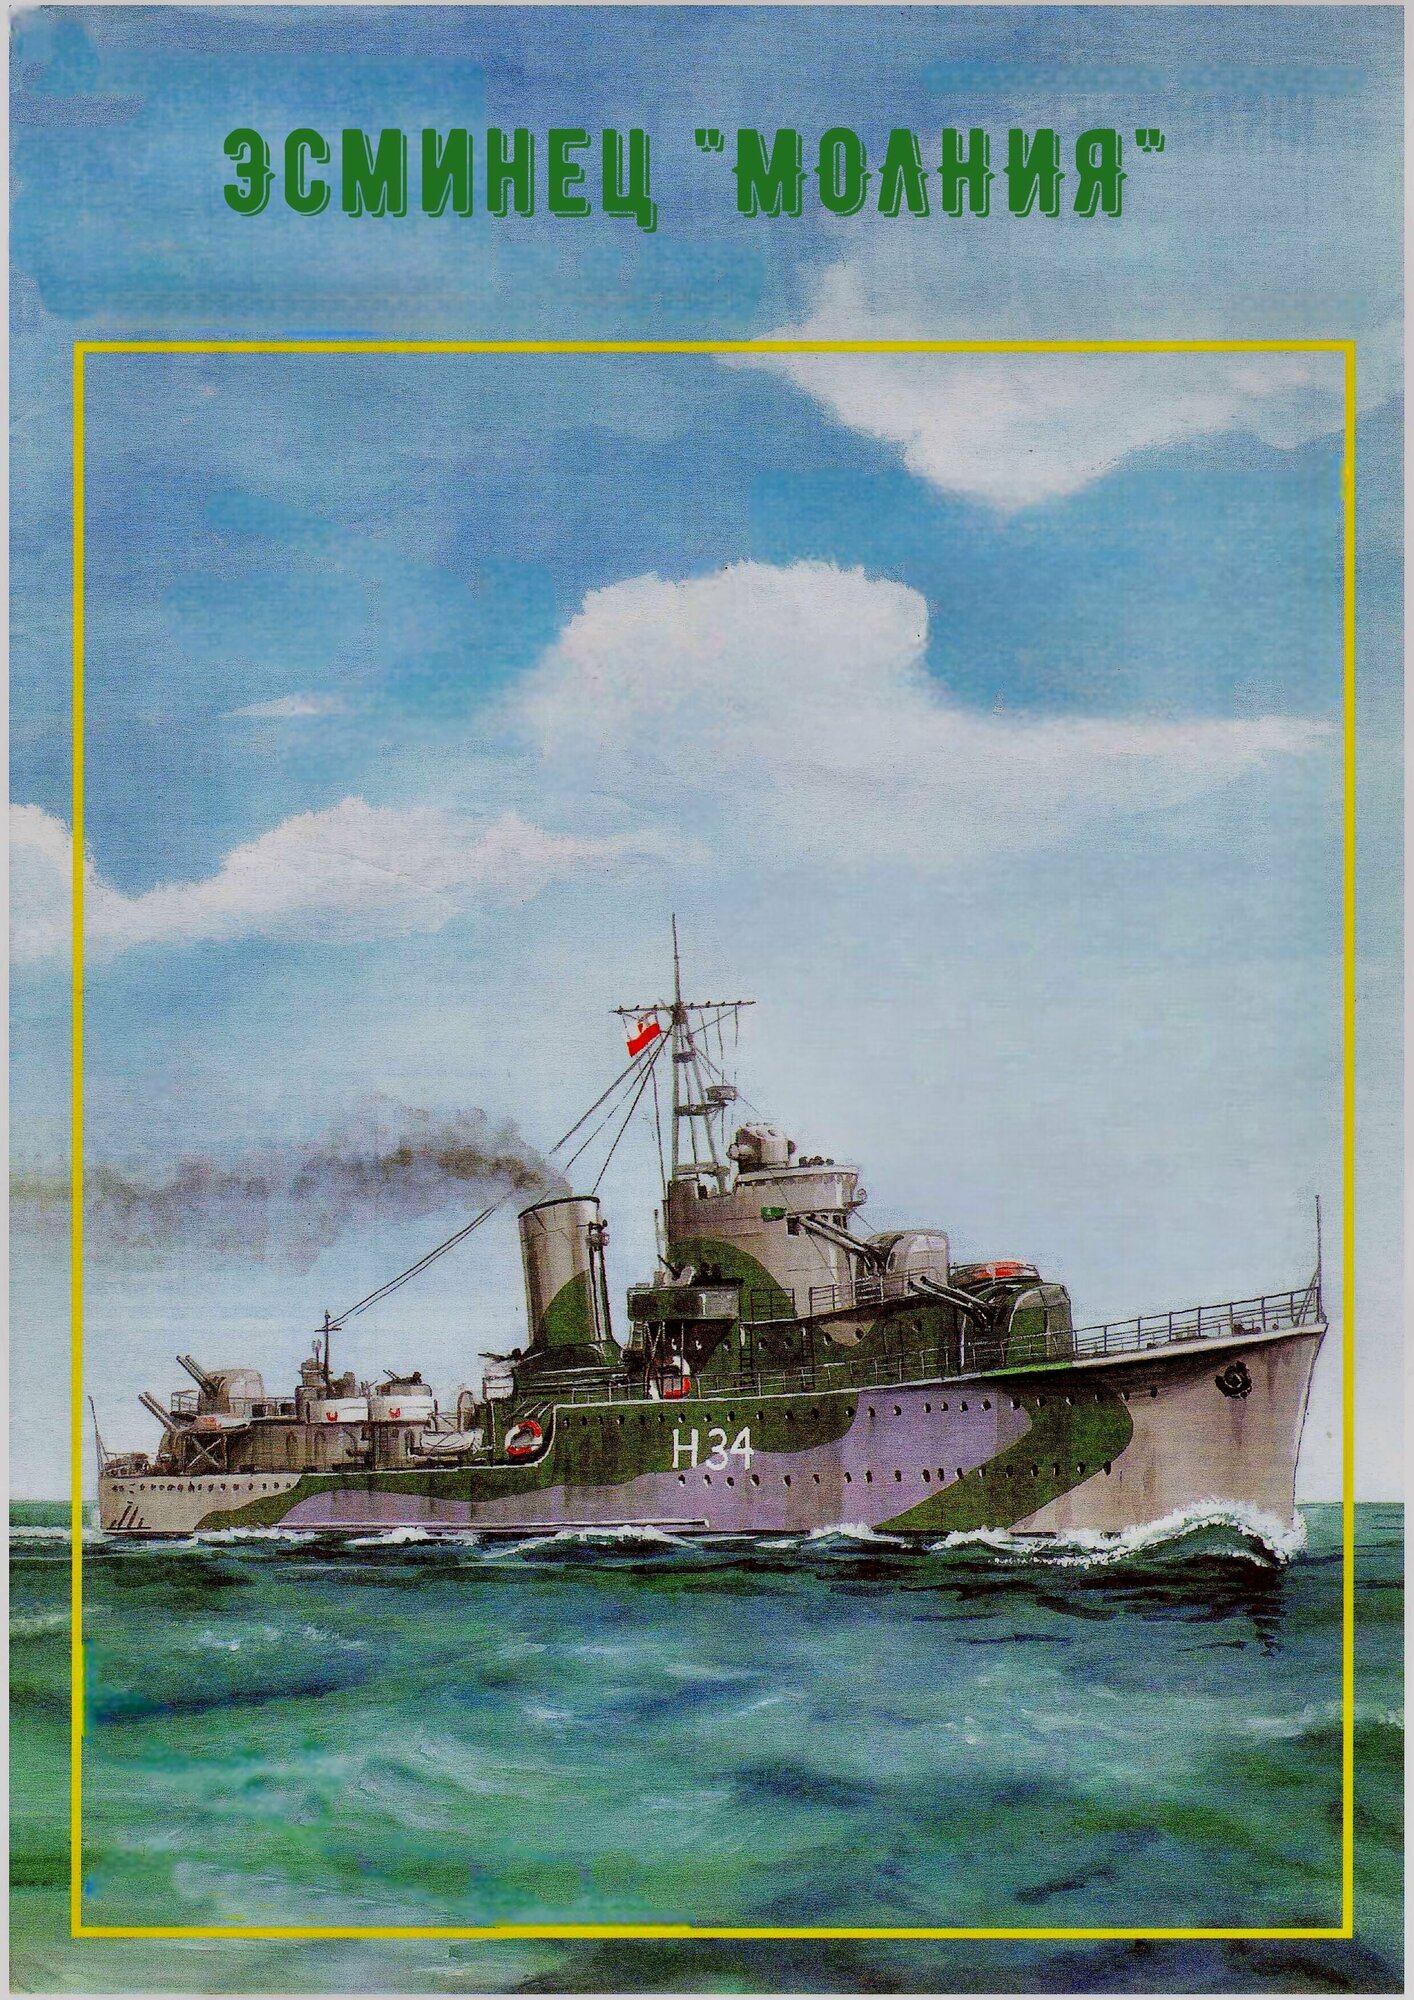 Сборная модель эсминца "Молния"